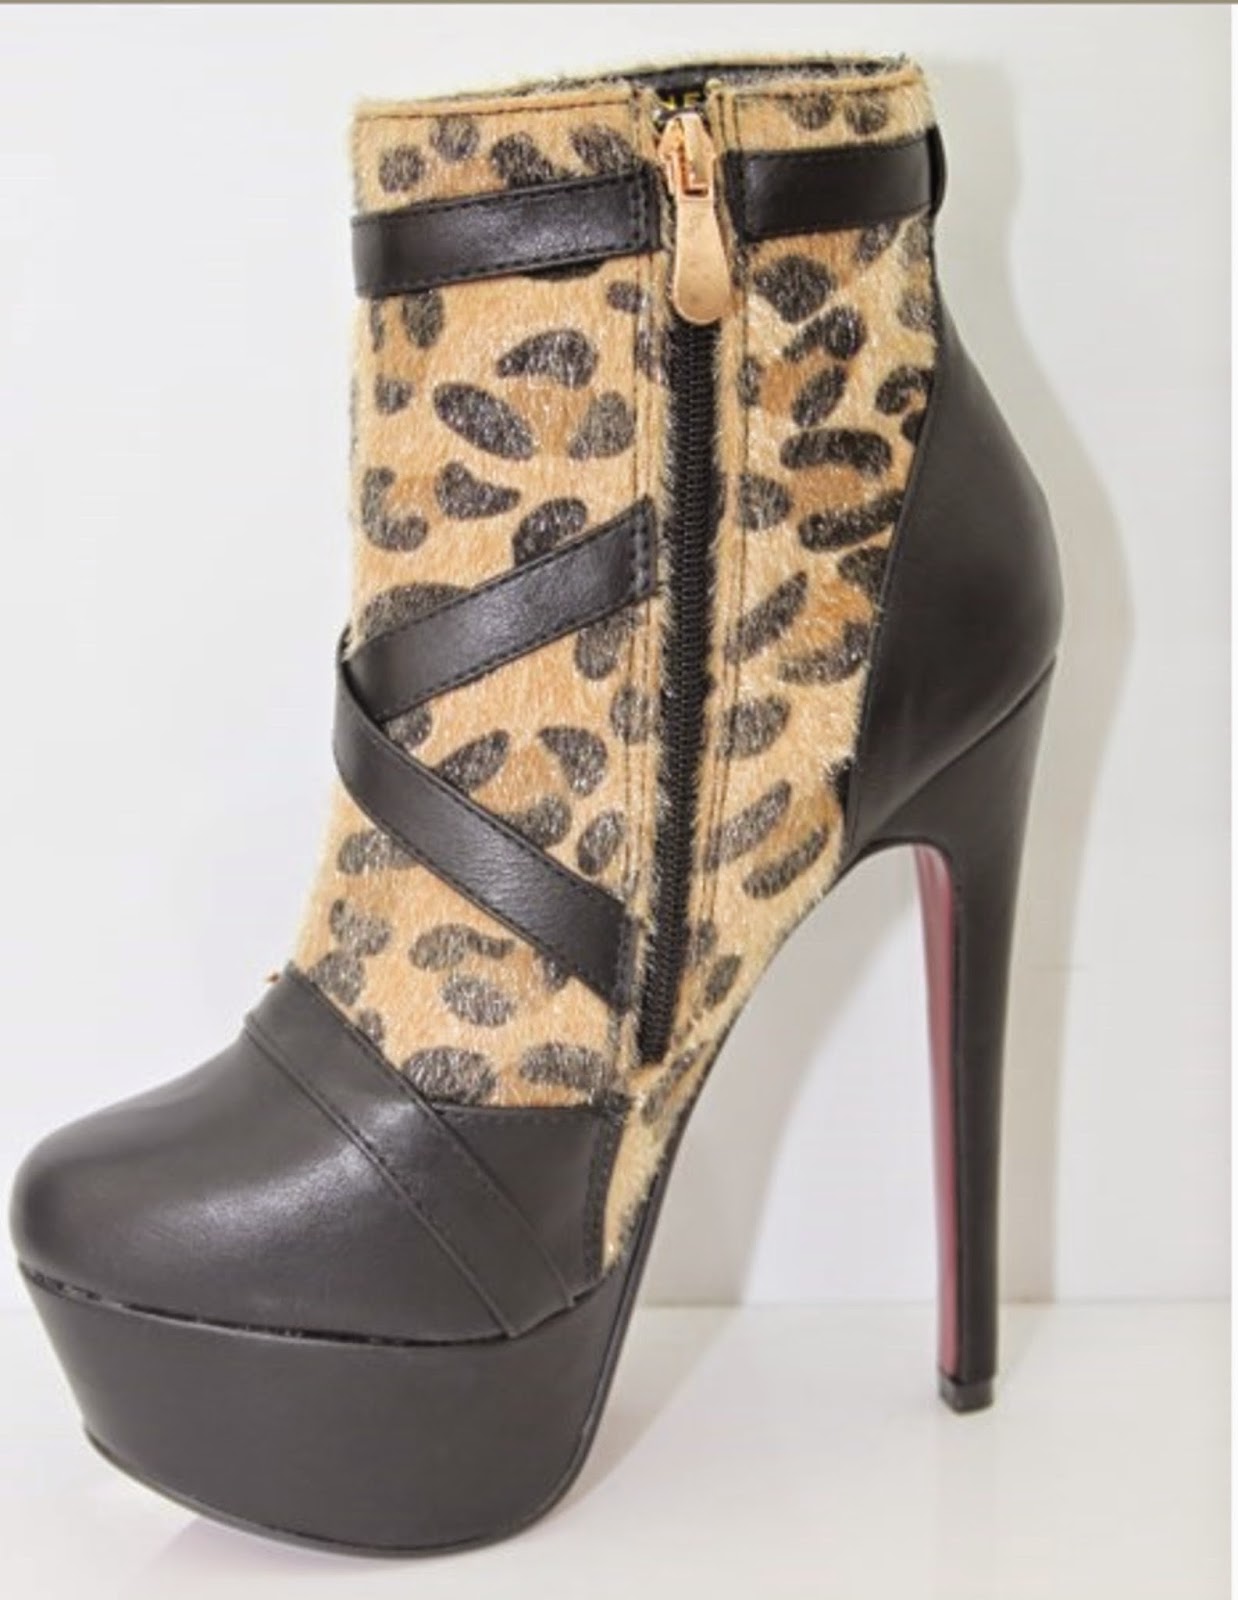 http://www.ebay.fr/itm/NOUVEAU-bottines-sexy-semelle-rouge-dessus-noir-et-leopard-plateau-sexy-WOW-/301467538478?ssPageName=STRK:MESE:IT